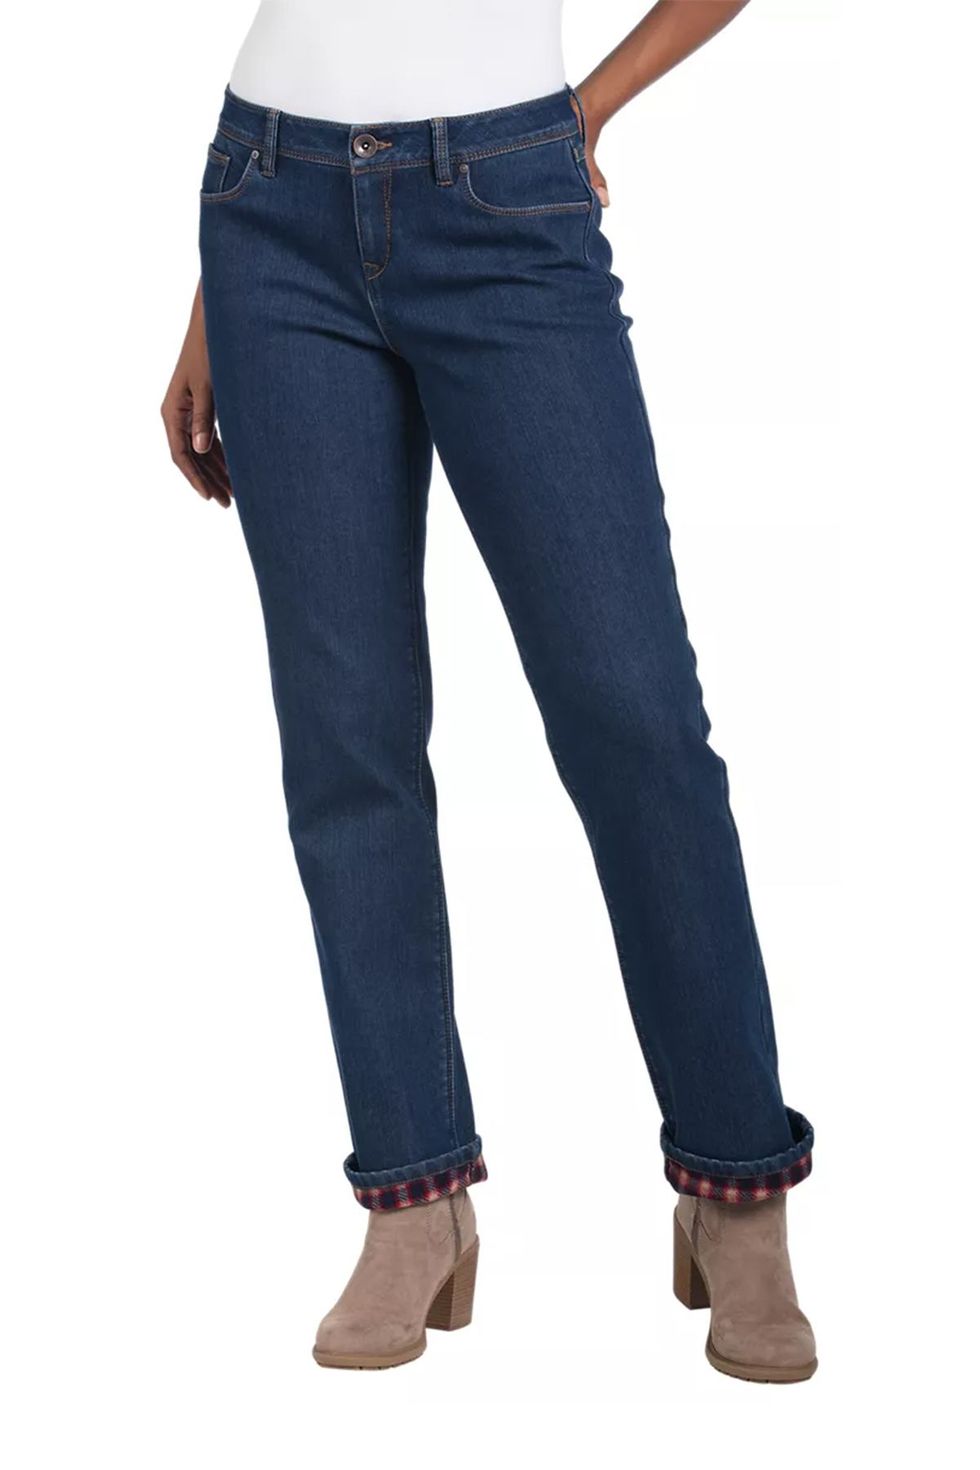 Women's Slim Fit Fleece-Lined Jeans